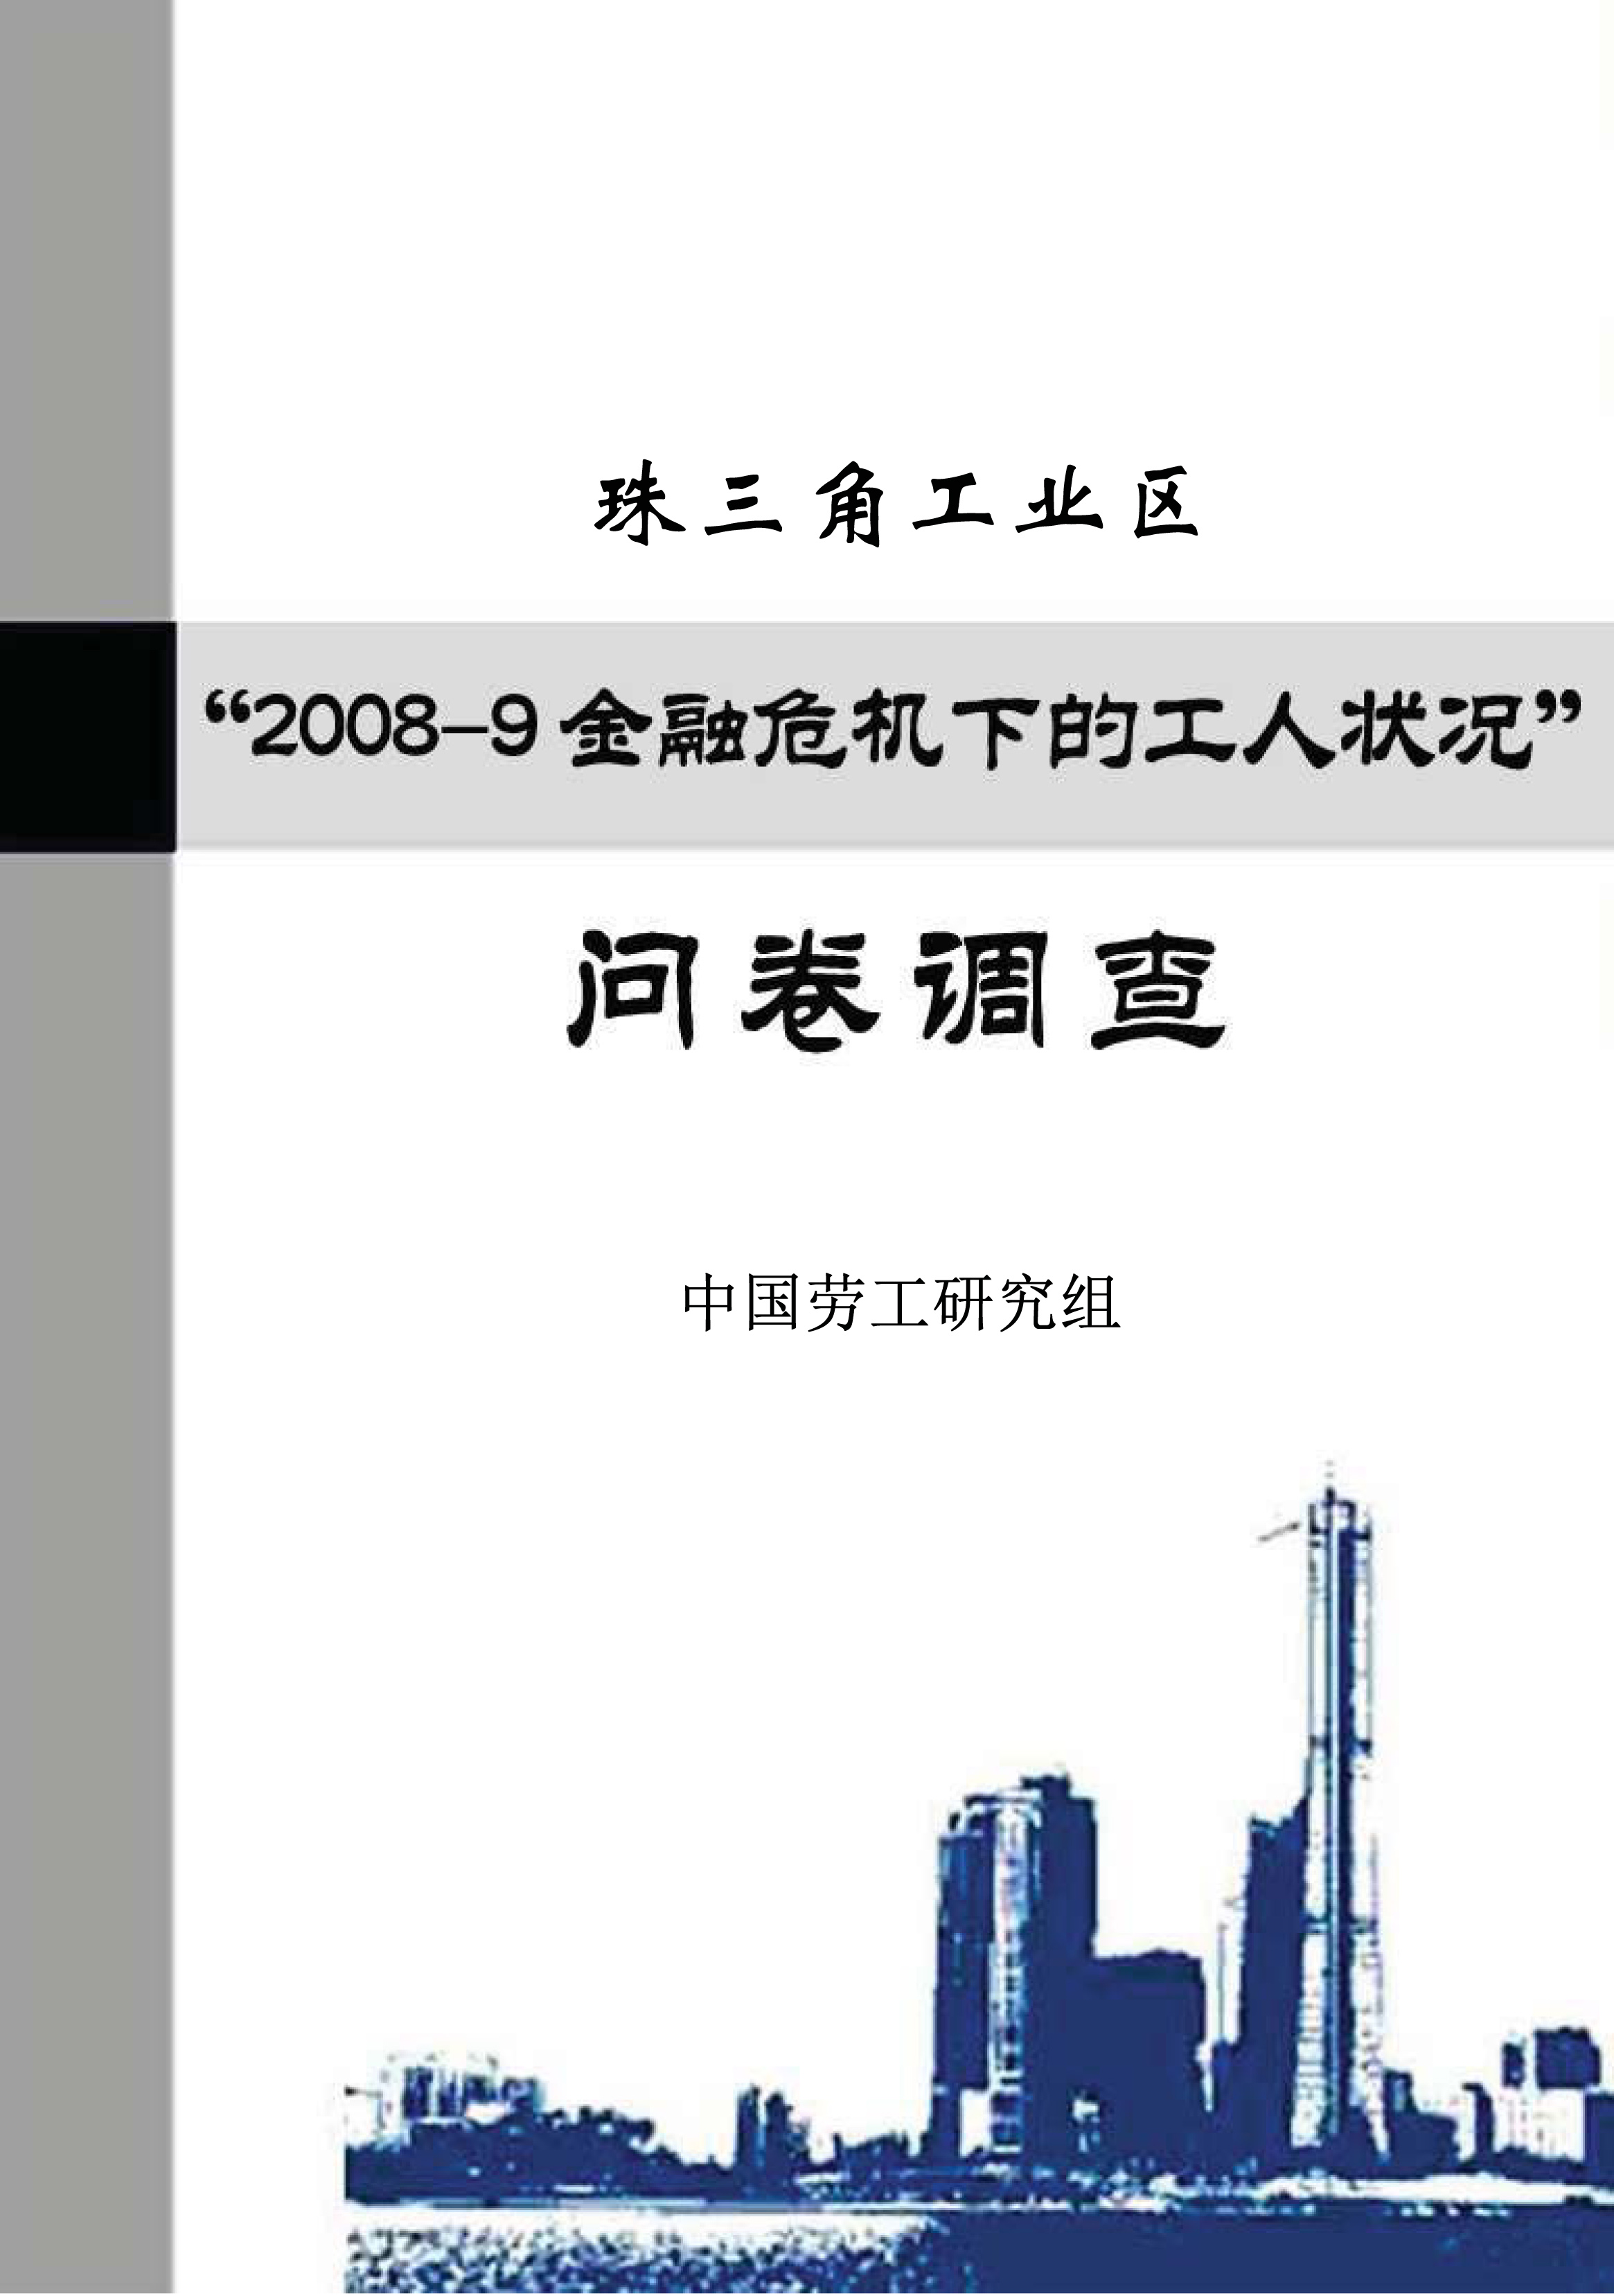 珠三角工業區 2008-9金融危機下的工人狀況—問卷調查